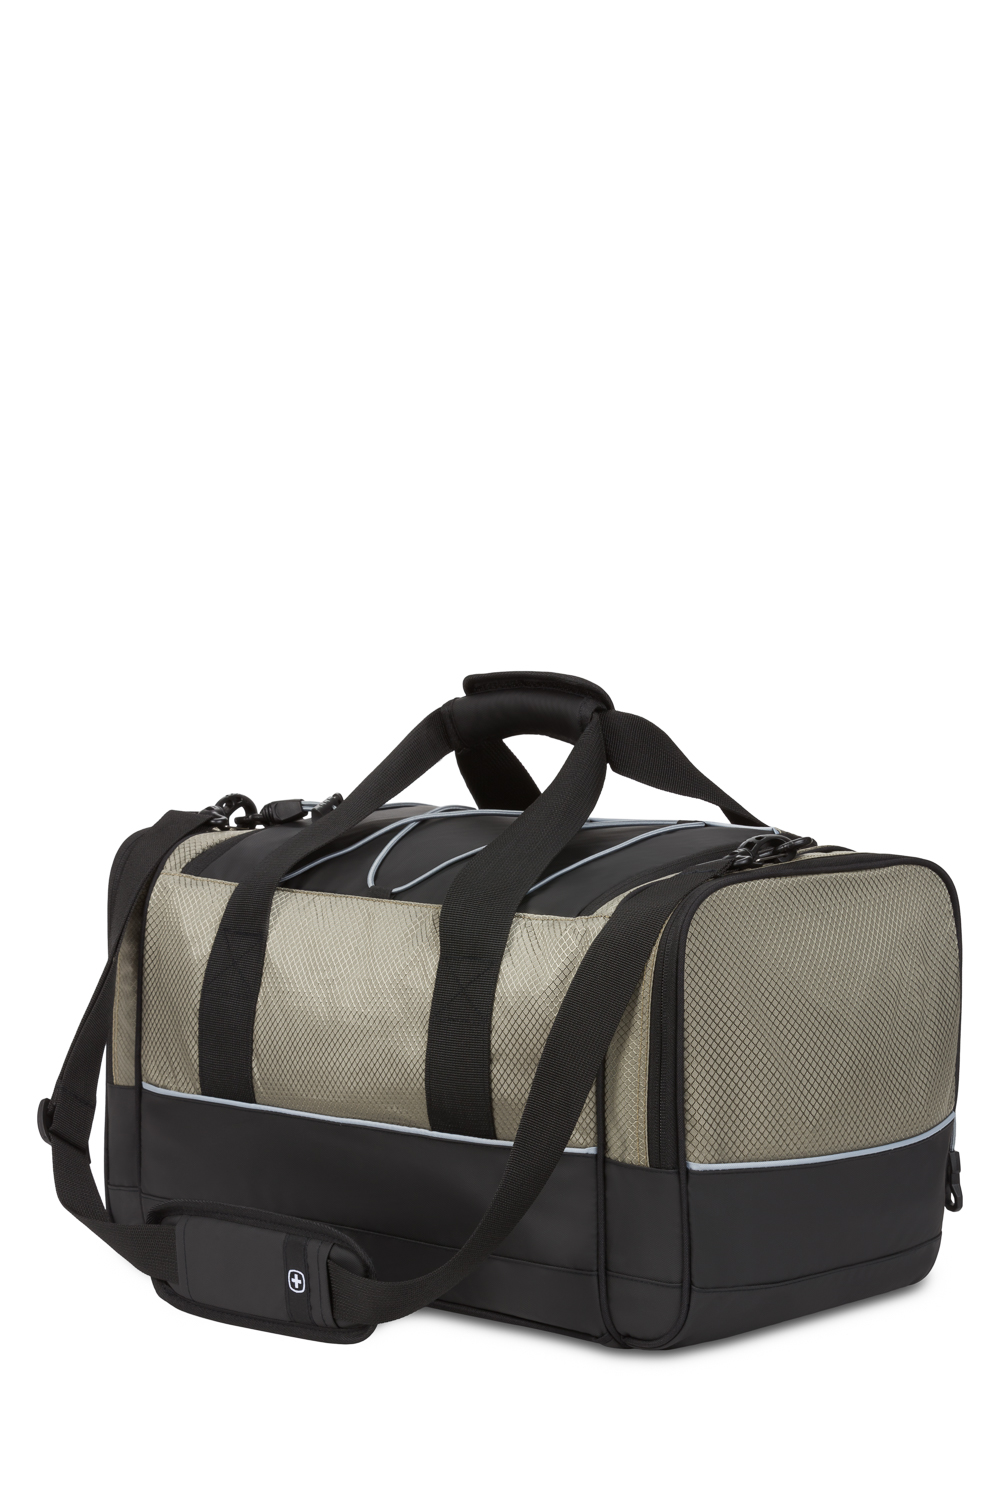 SWISSGEAR 9000 20” Apex Duffel Bag - Pewter Dobby